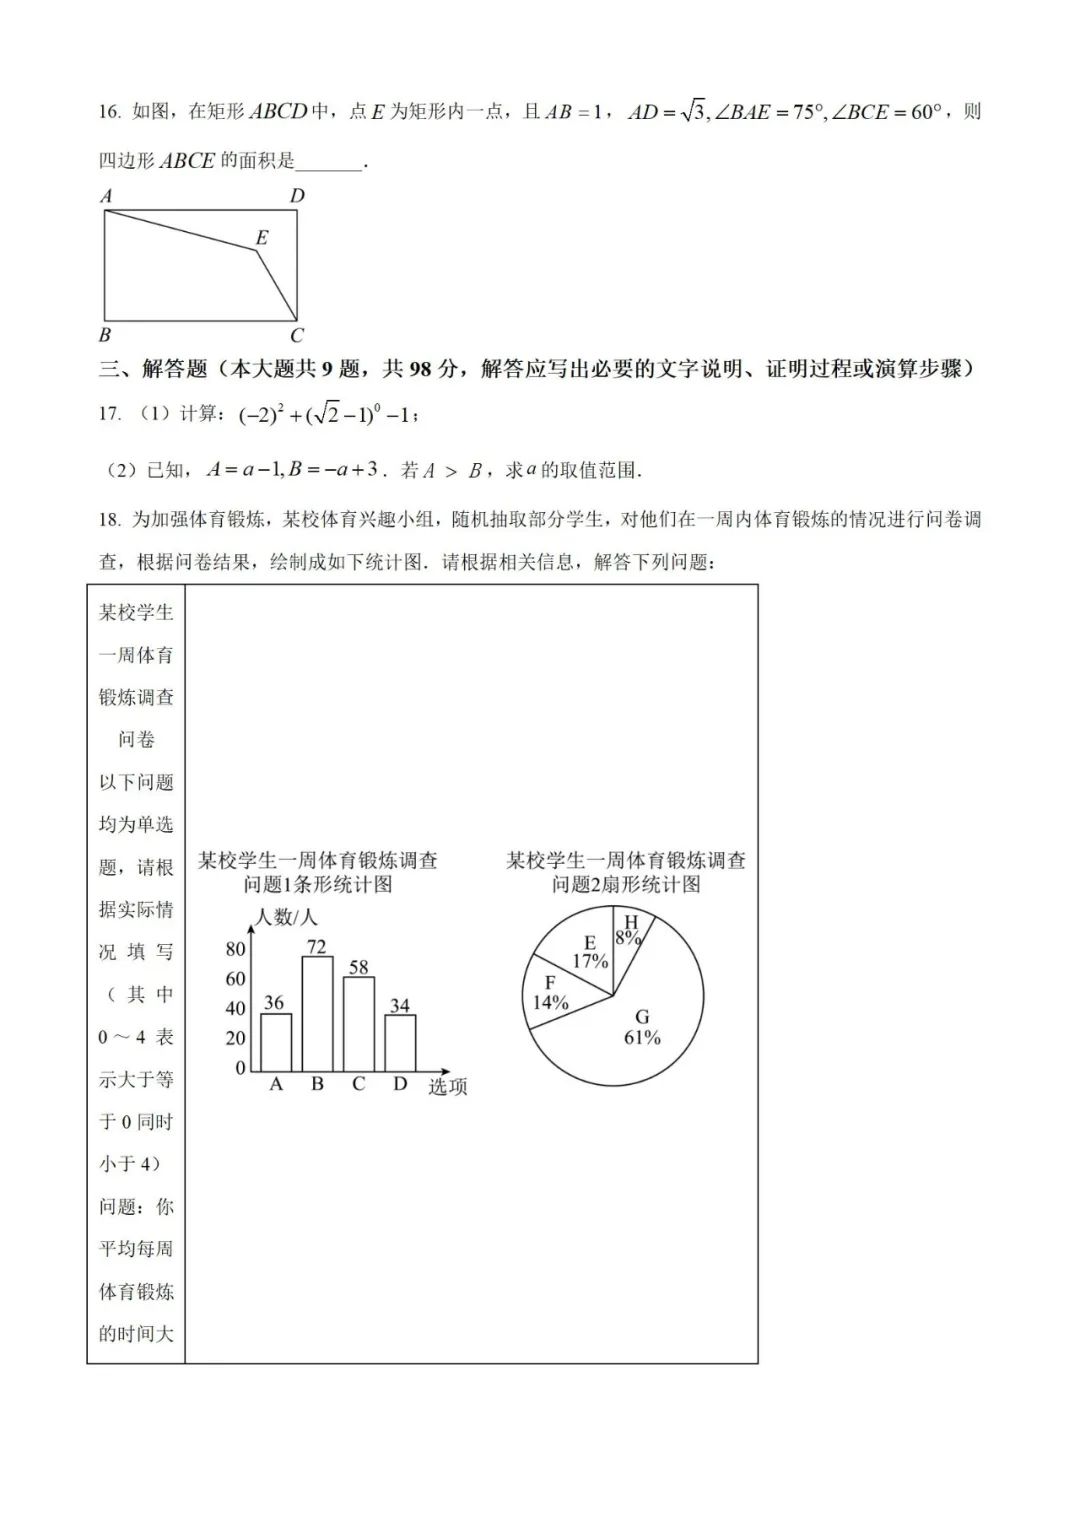 【中考真题】2023年贵州省中考数学真题 (带答案解析) 第4张